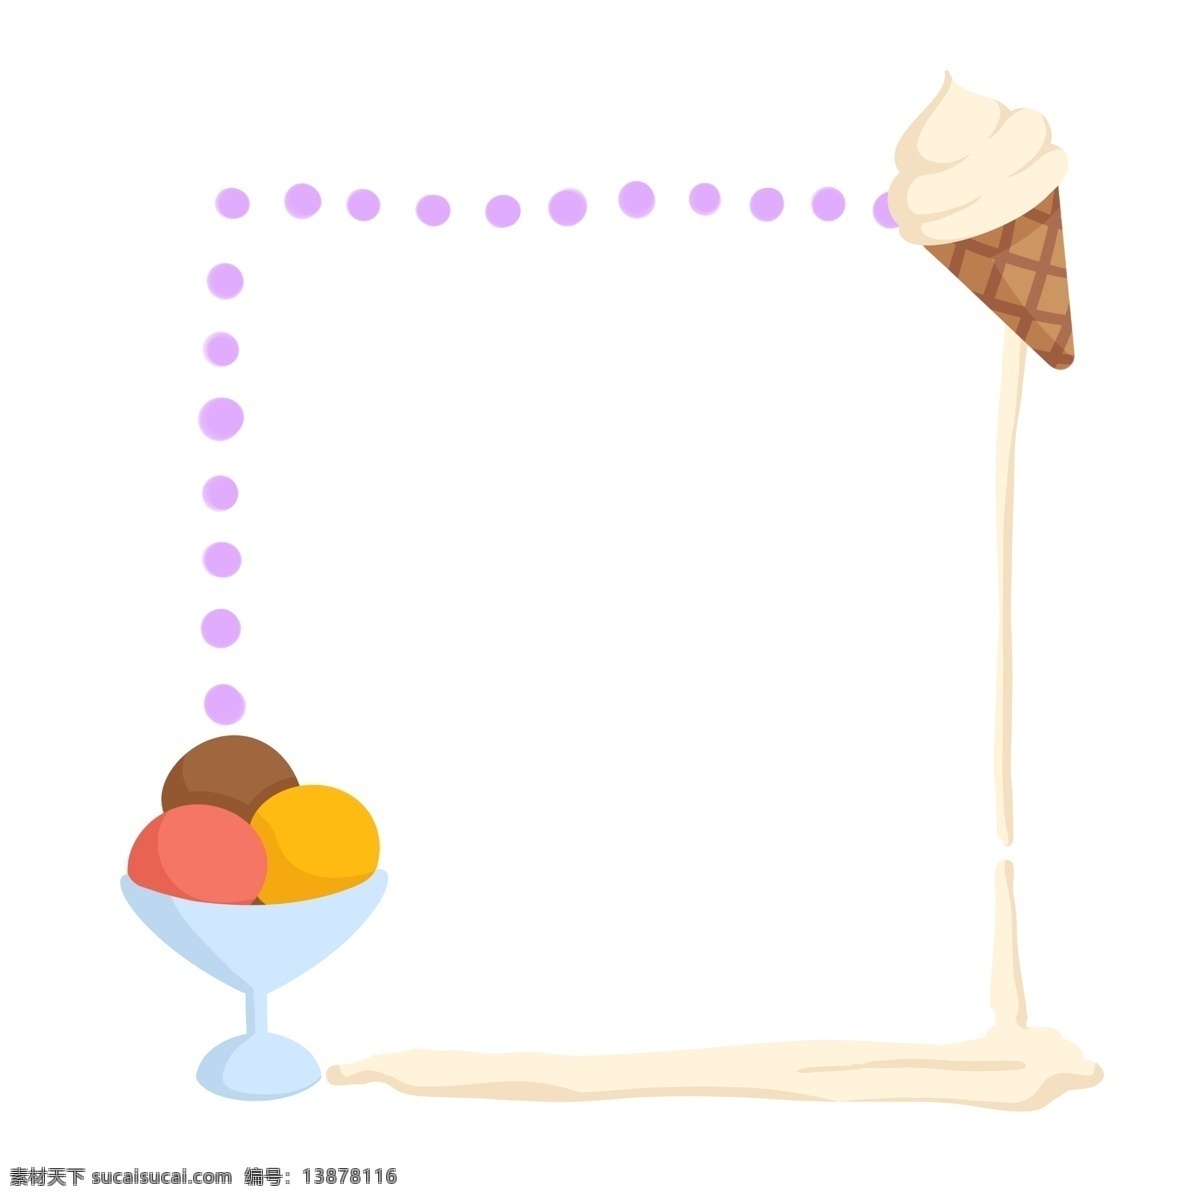 创意 美味 冰淇淋 边框 冰淇淋边框 圆点虚线 可爱边框 甜点边框 甜品 冰淇淋球 边框插画